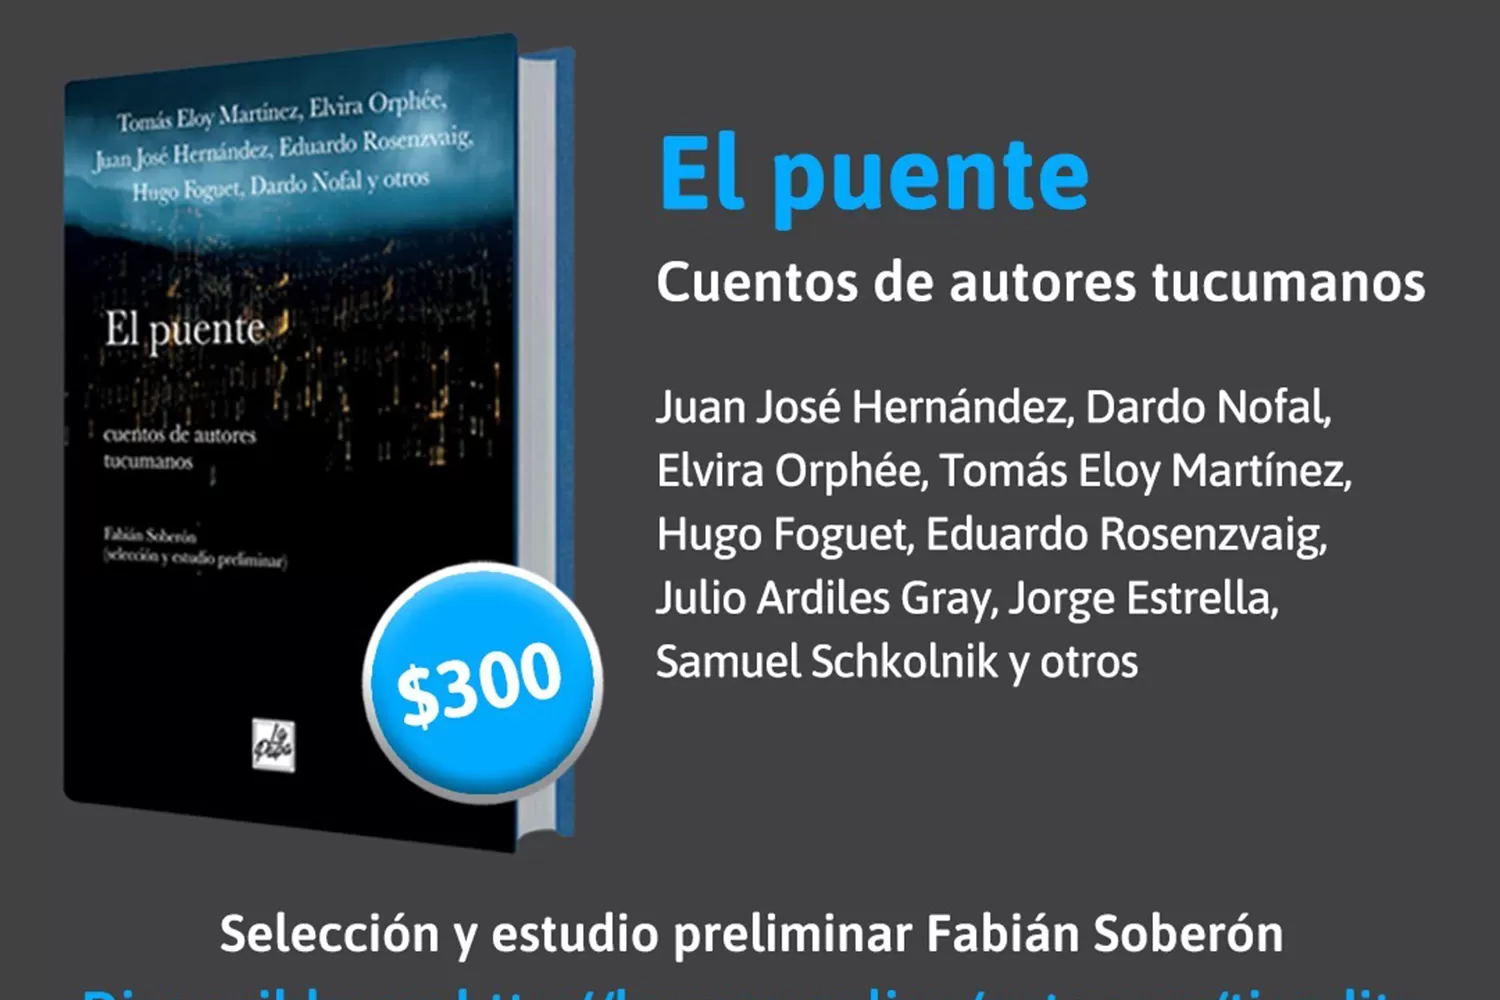 Publican una antología de cuentos de autores tucumanos